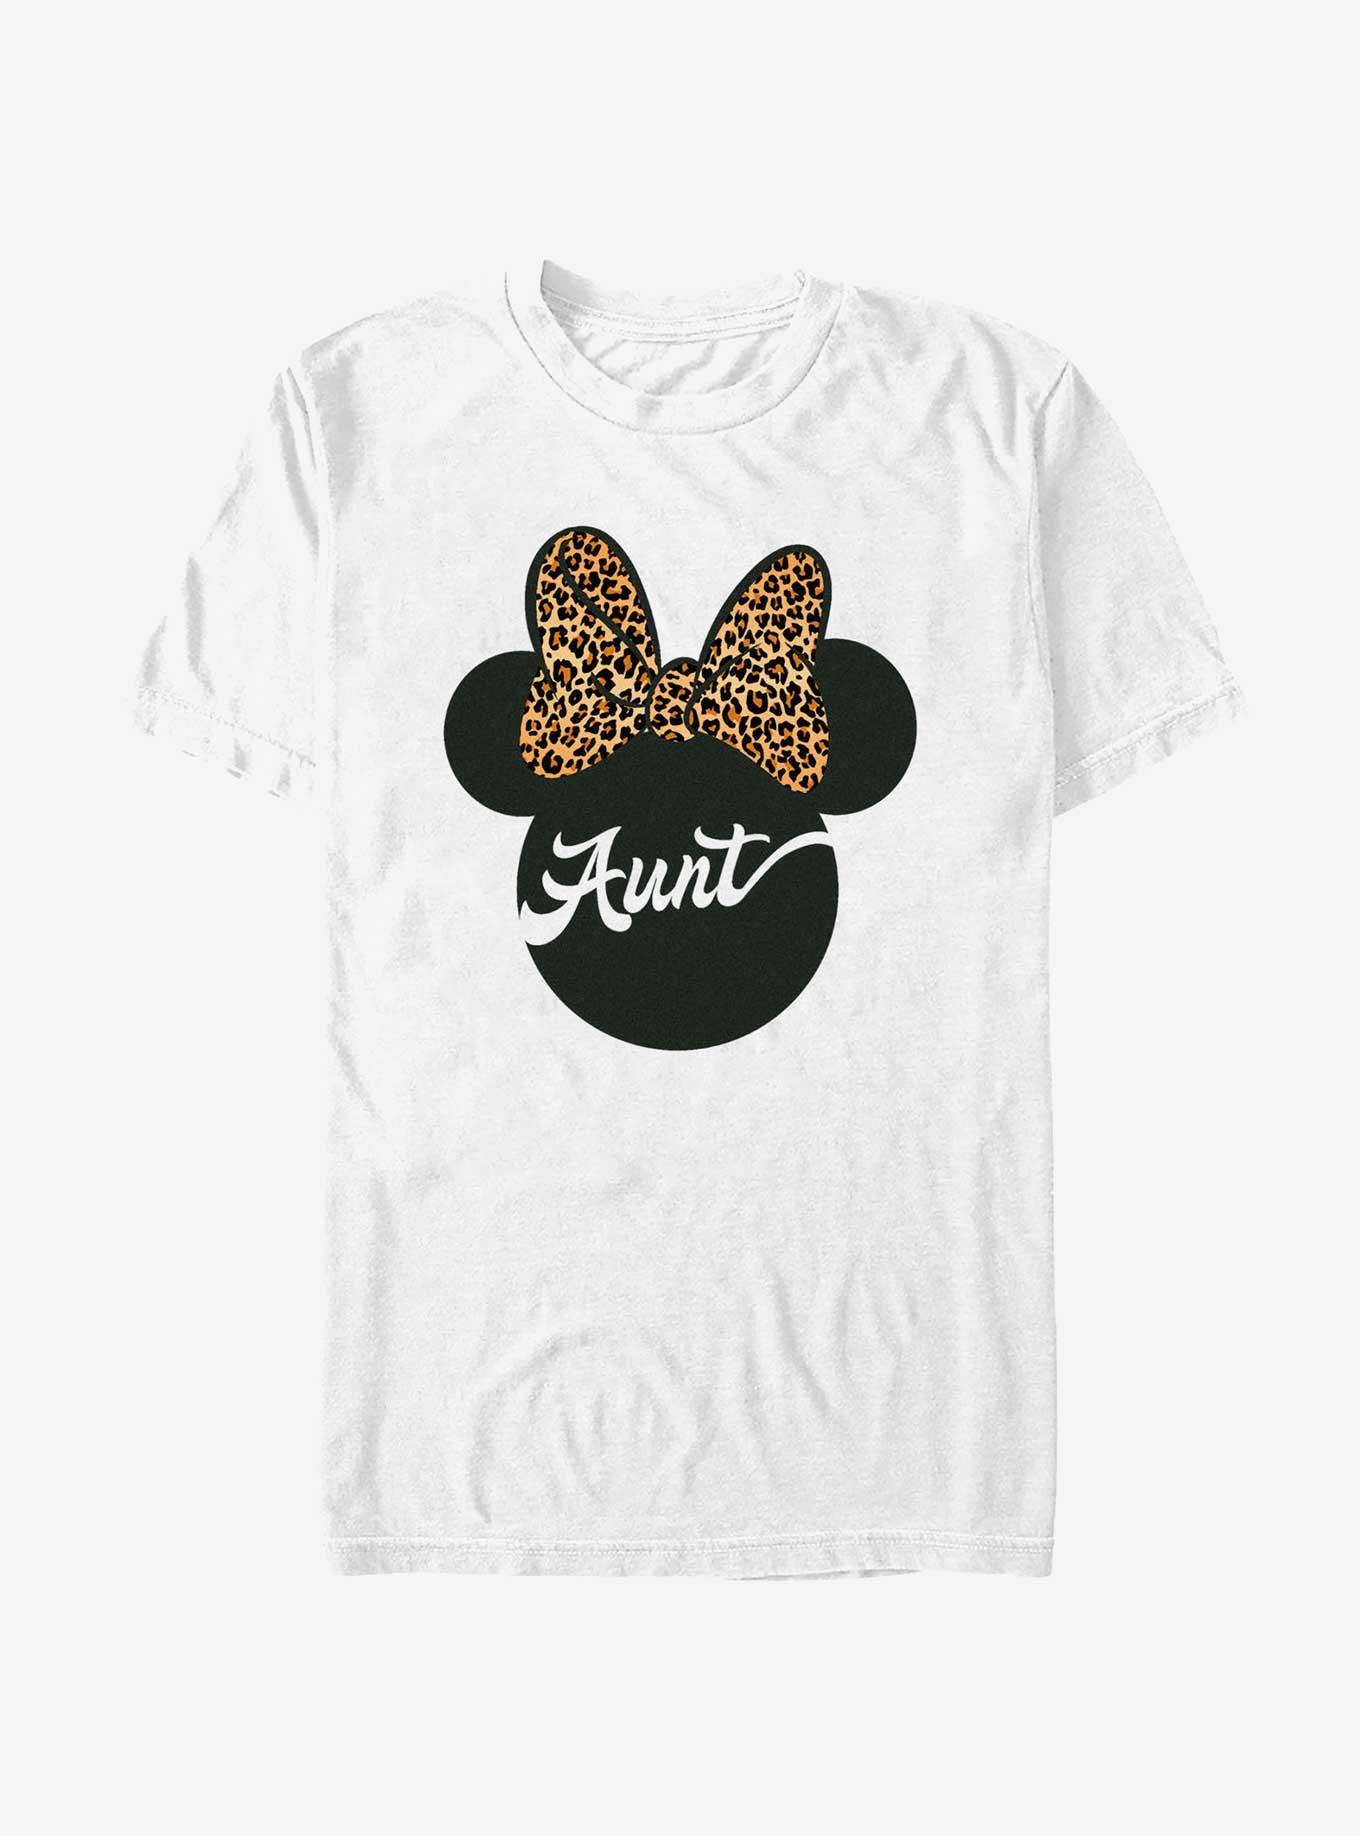 Disney Minnie Mouse Ears Leopard Bow Aunt T-Shirt, WHITE, hi-res